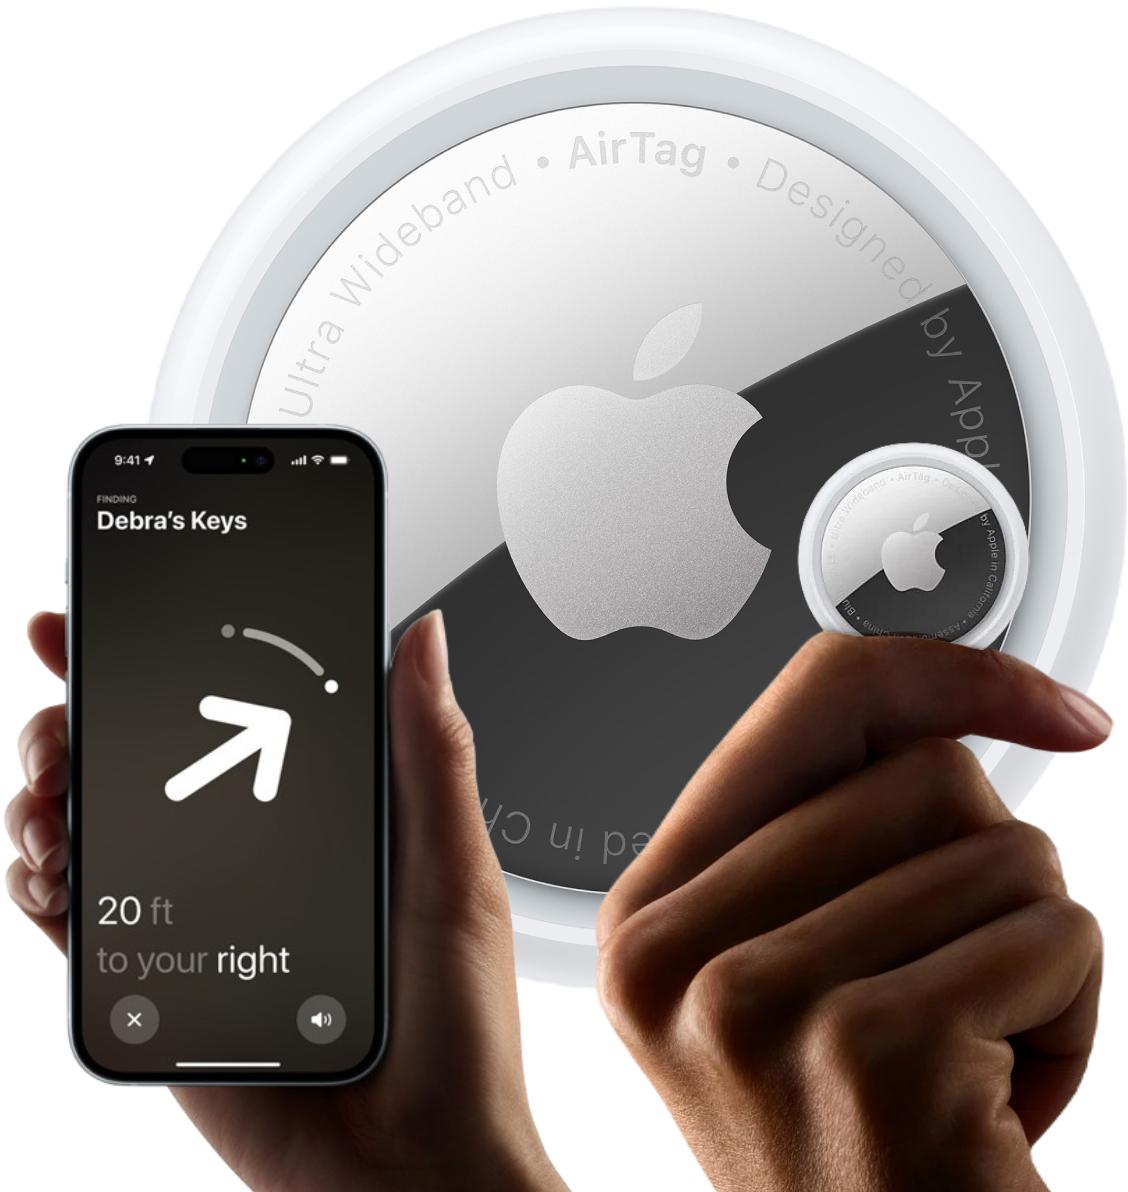 Lokalizator Apple AirTag - niewielki, lekki i łatwy w użyciu lokalizator przedmiotów